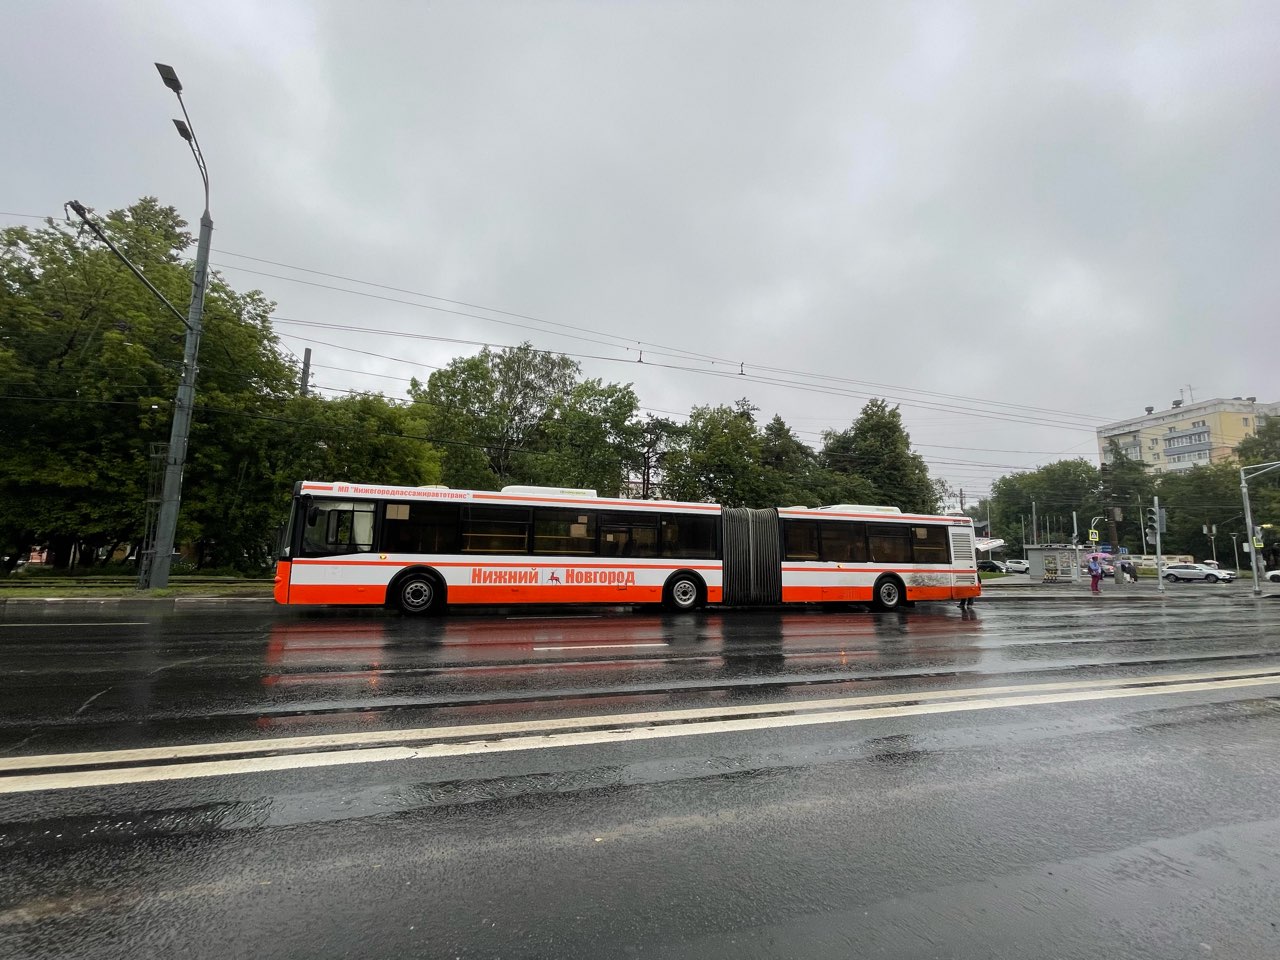 Расписание движения трех автобусов изменено в Нижнем Новгороде - фото 1